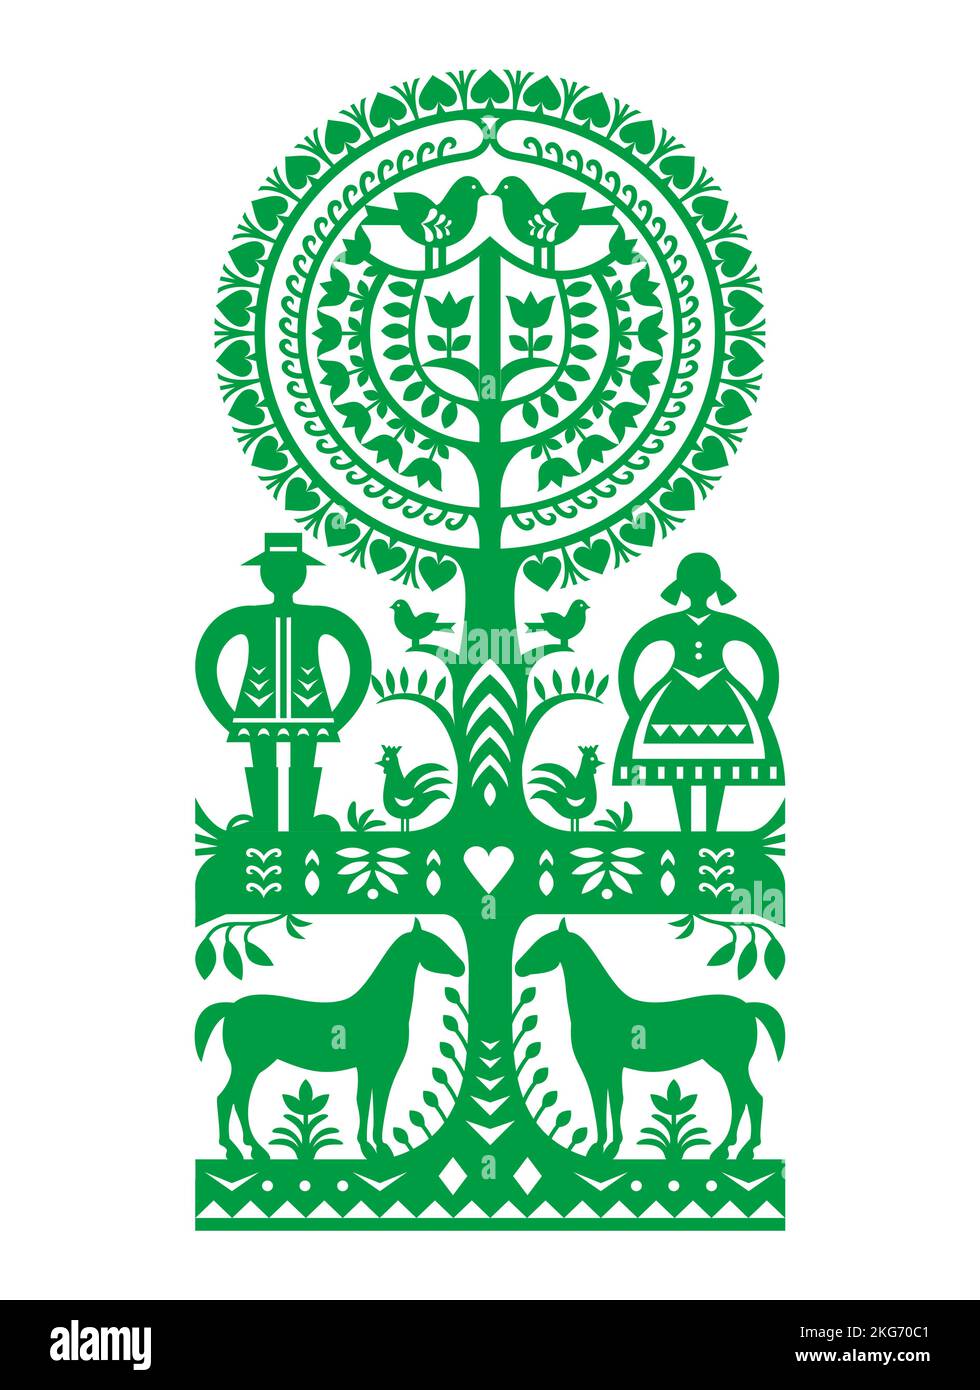 Dessin vectoriel d'art folklorique polonais Wycinanki Kurpiowskie avec homme et femme, oiseaux et chevaux - Kumpie papier découpes design avec scène rurale Illustration de Vecteur